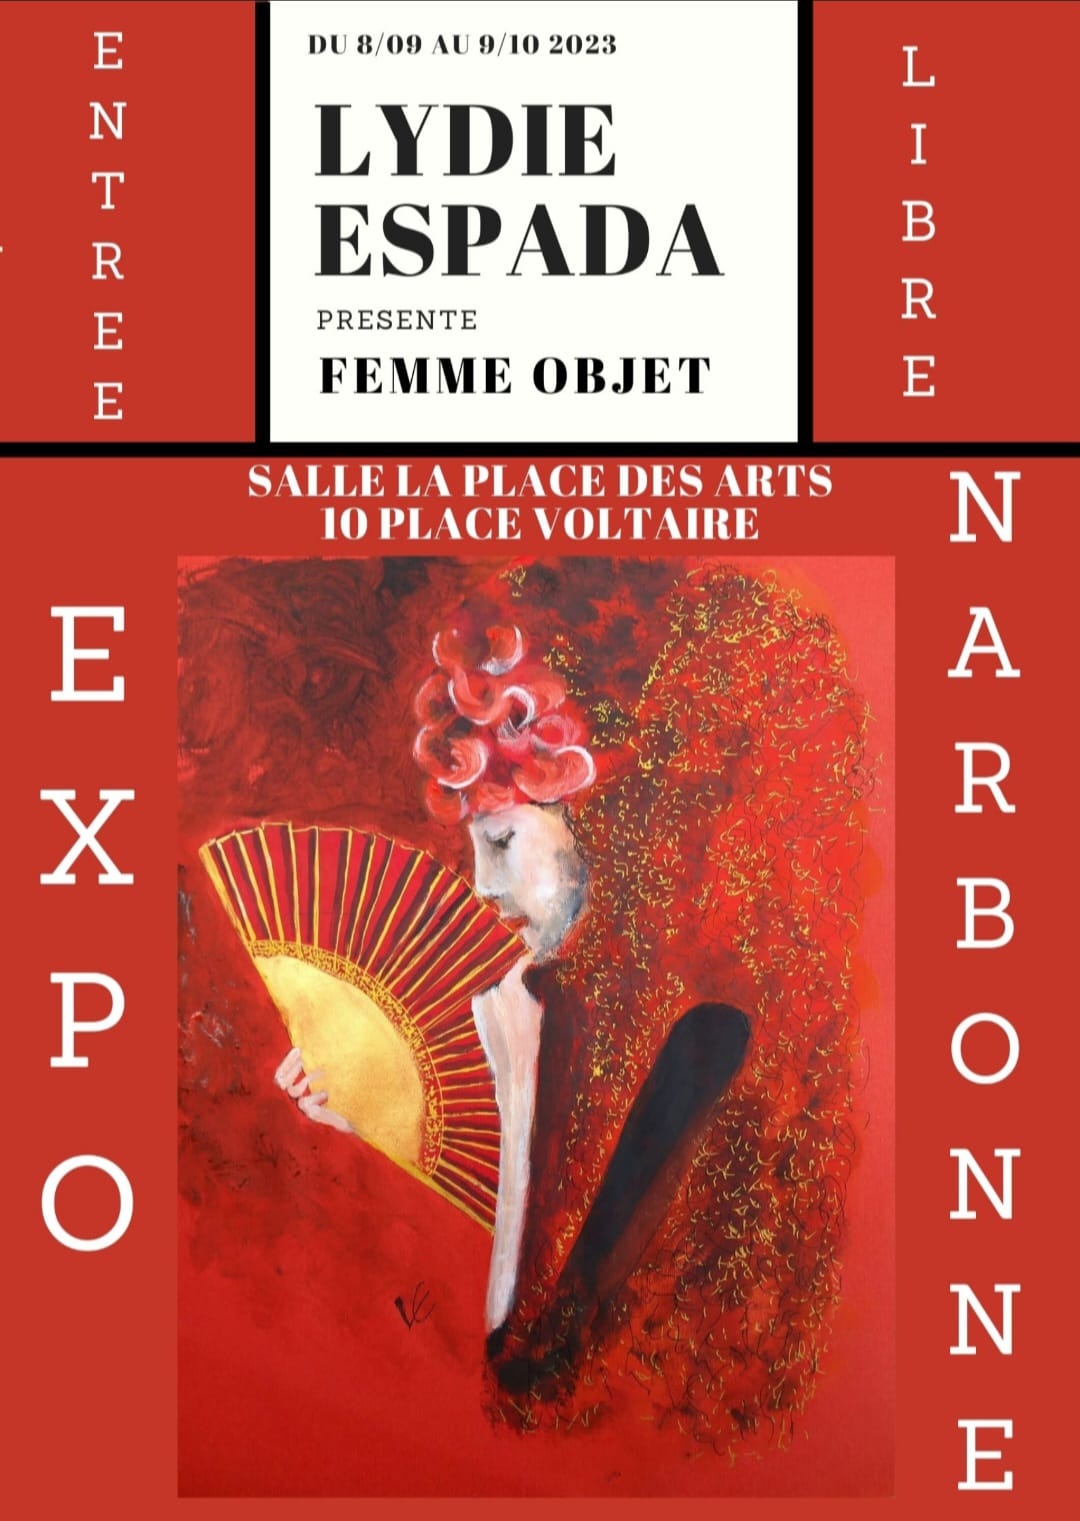 Lydie Espada "Femme objet" exposition du 8 septembre au 9 octobre